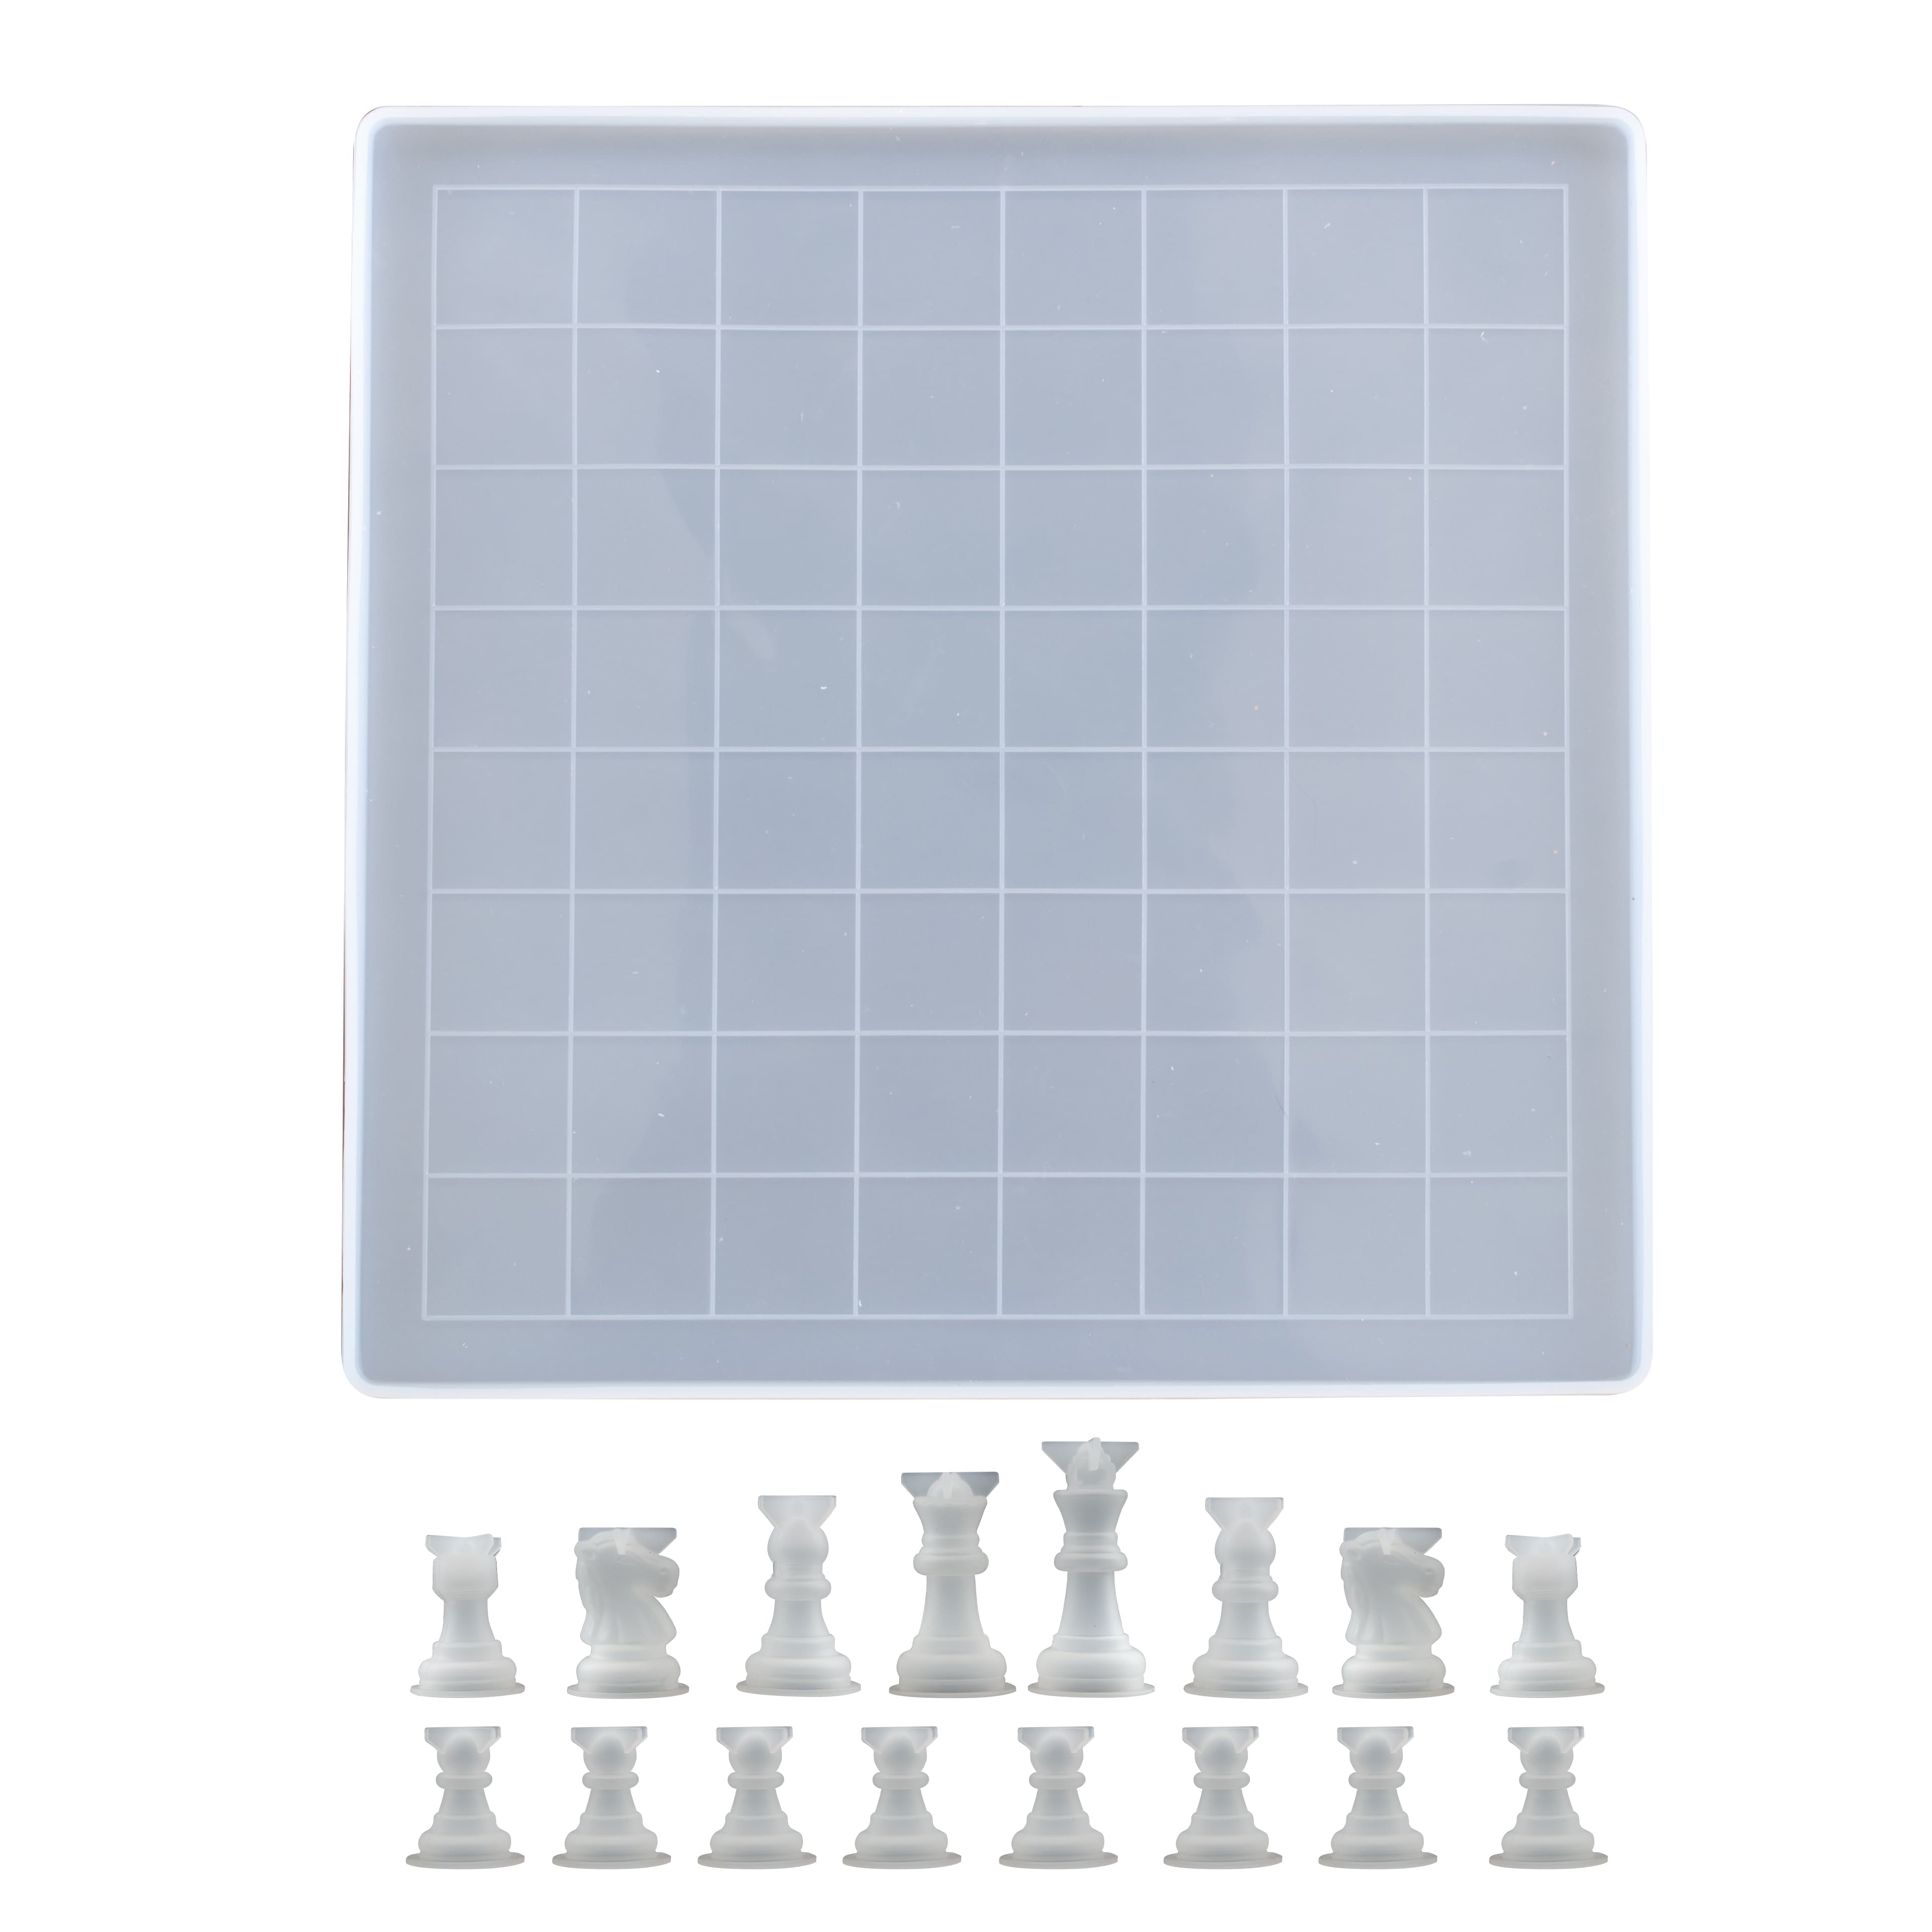 Chess Set Mold – Glitter and Crafts 4U